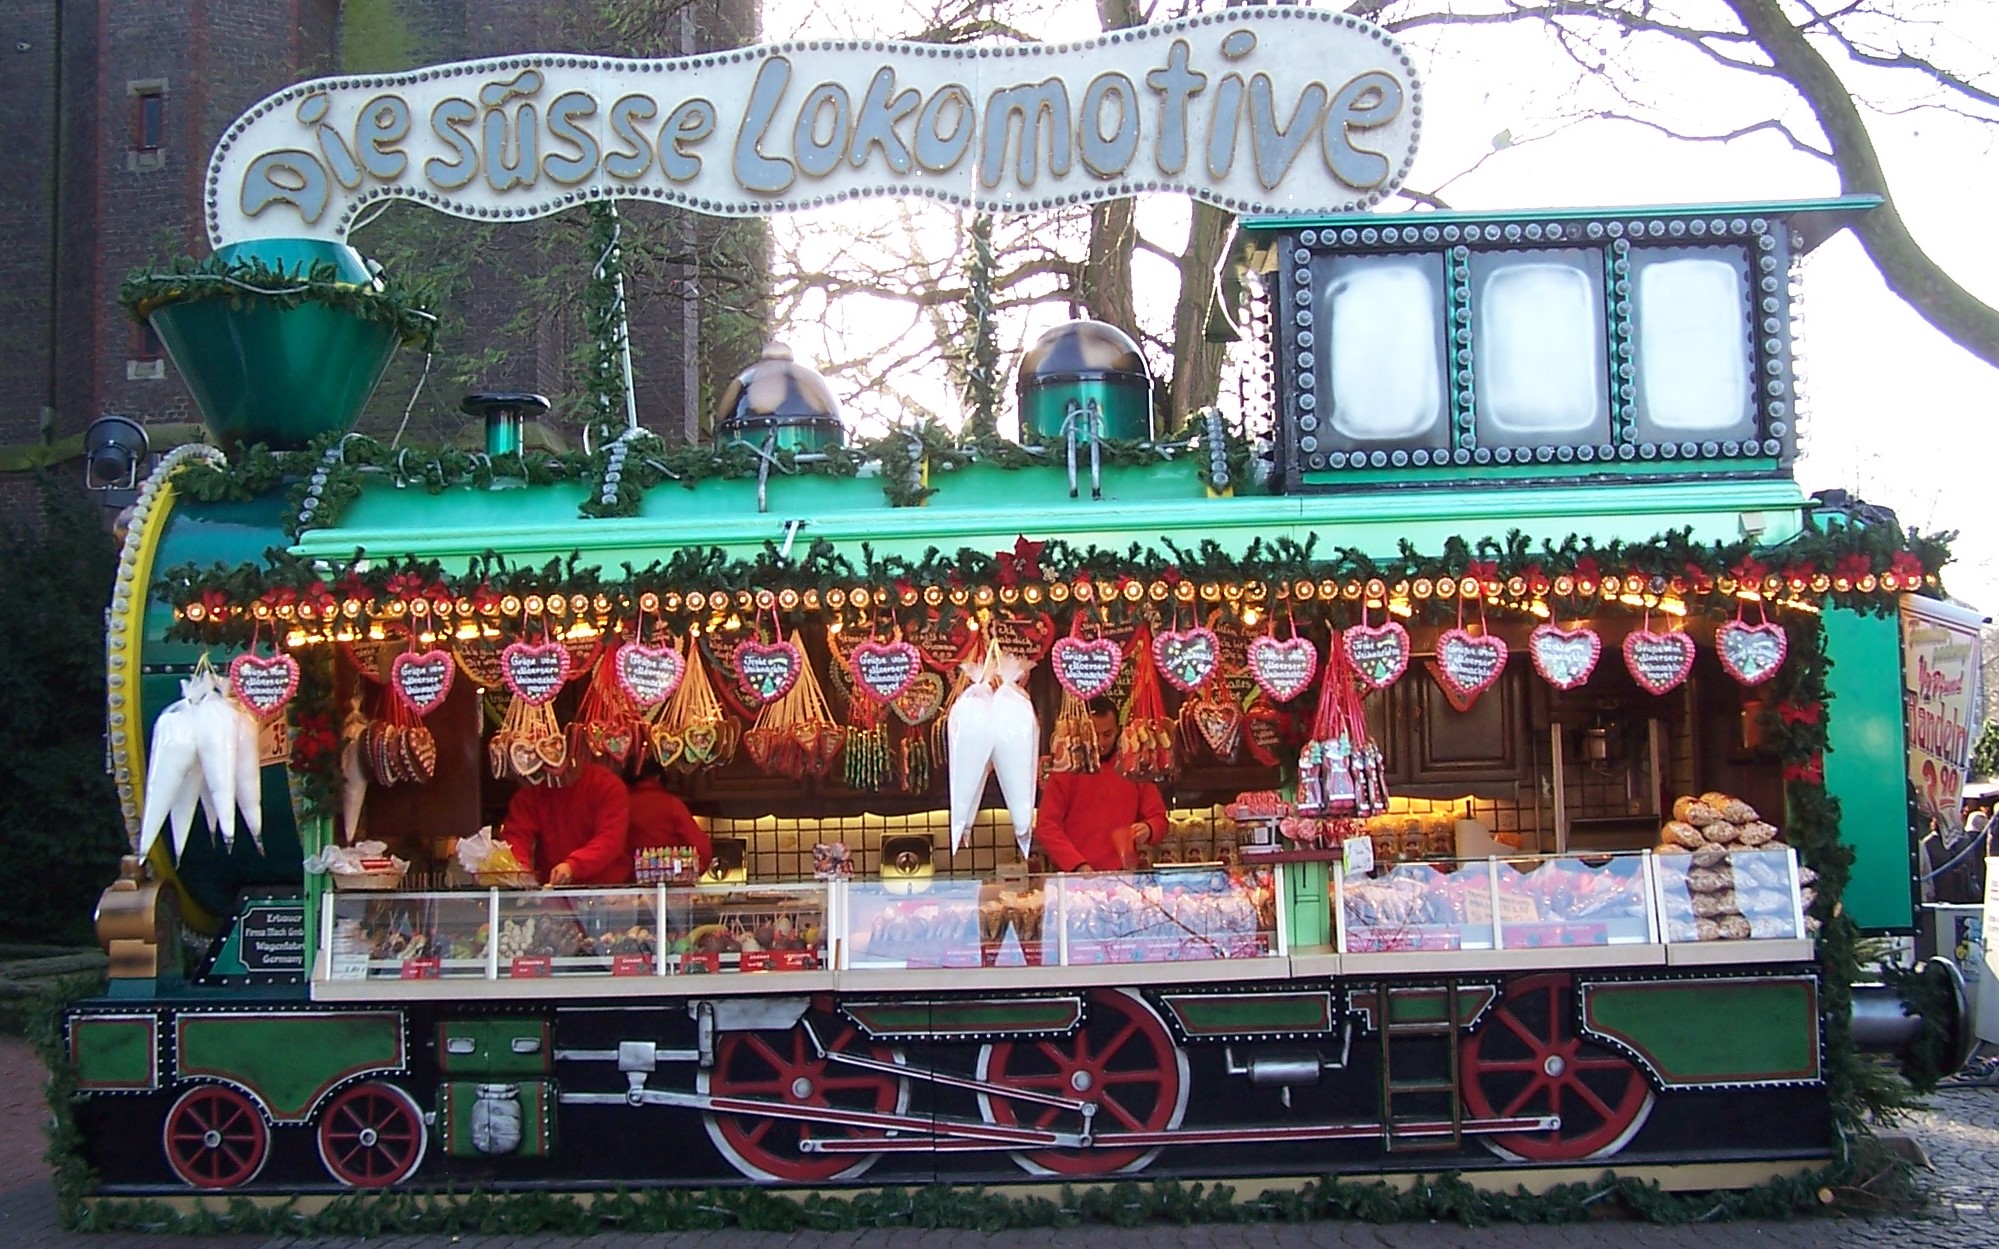 Nach 1983 stand die Süße Lokomotive erst wieder im Jahre 2008 auf einem Weihnachtsmakrt. Bild WM in Moers